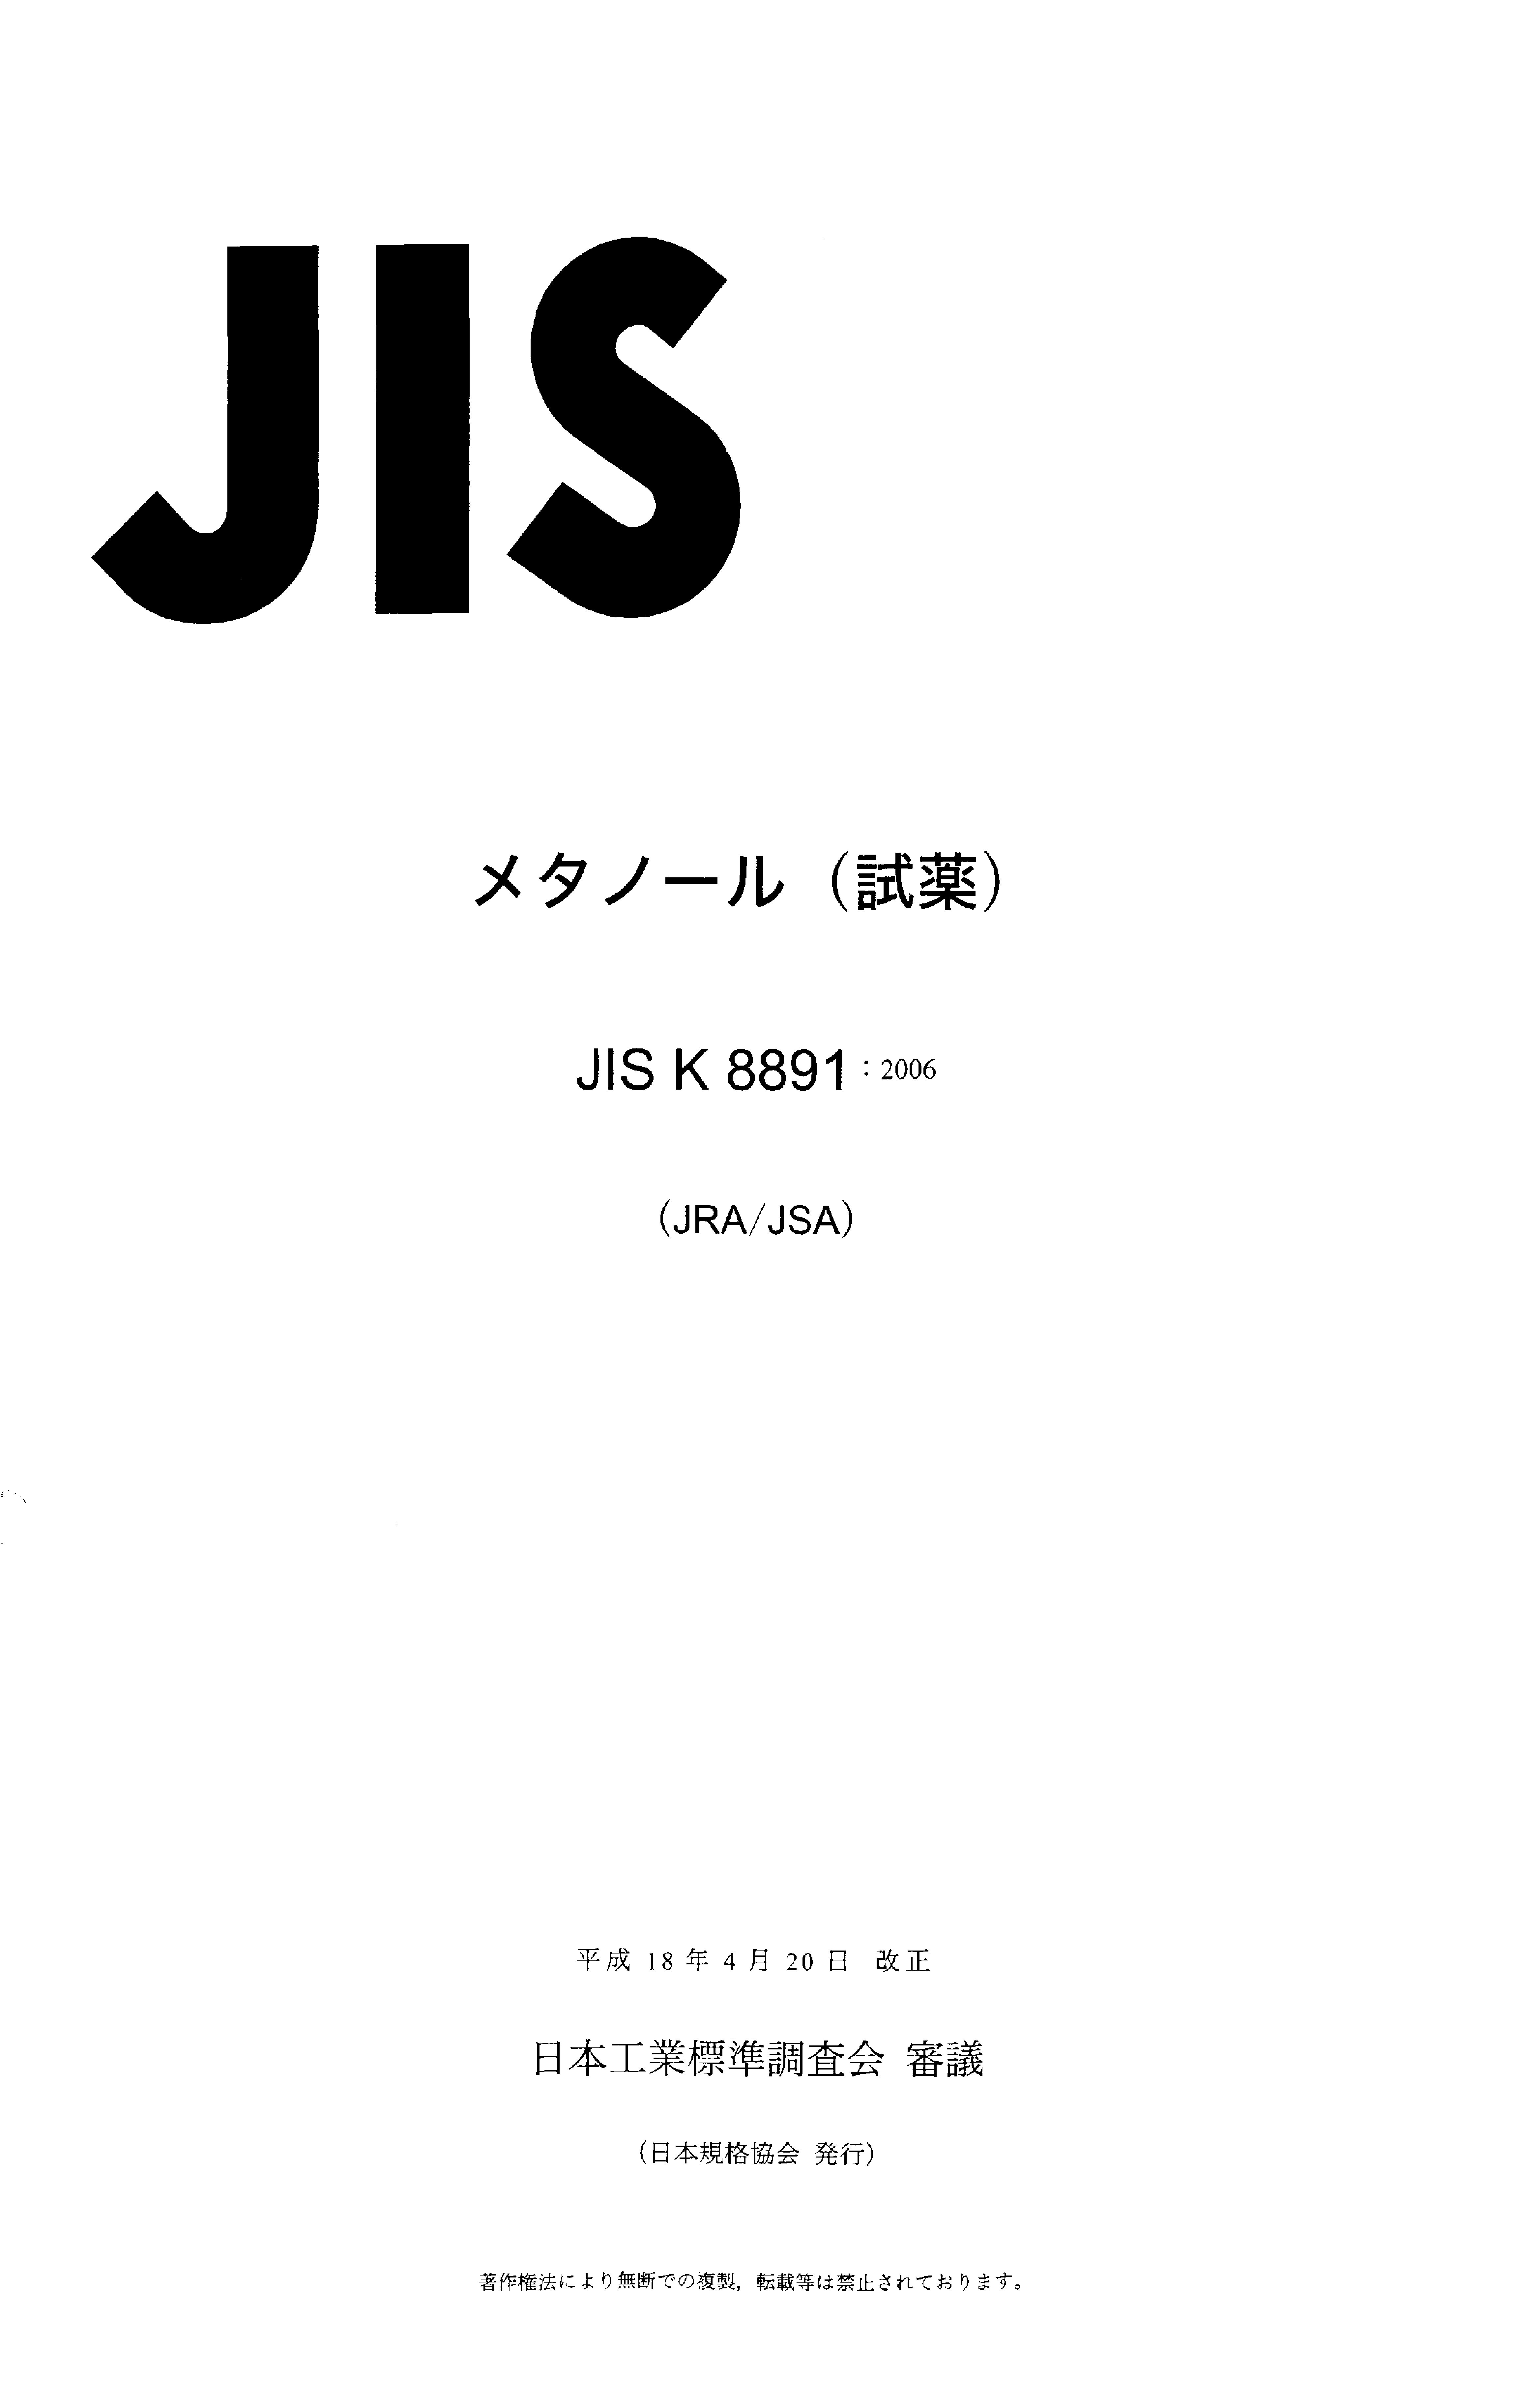 JIS K 8891:2006封面图